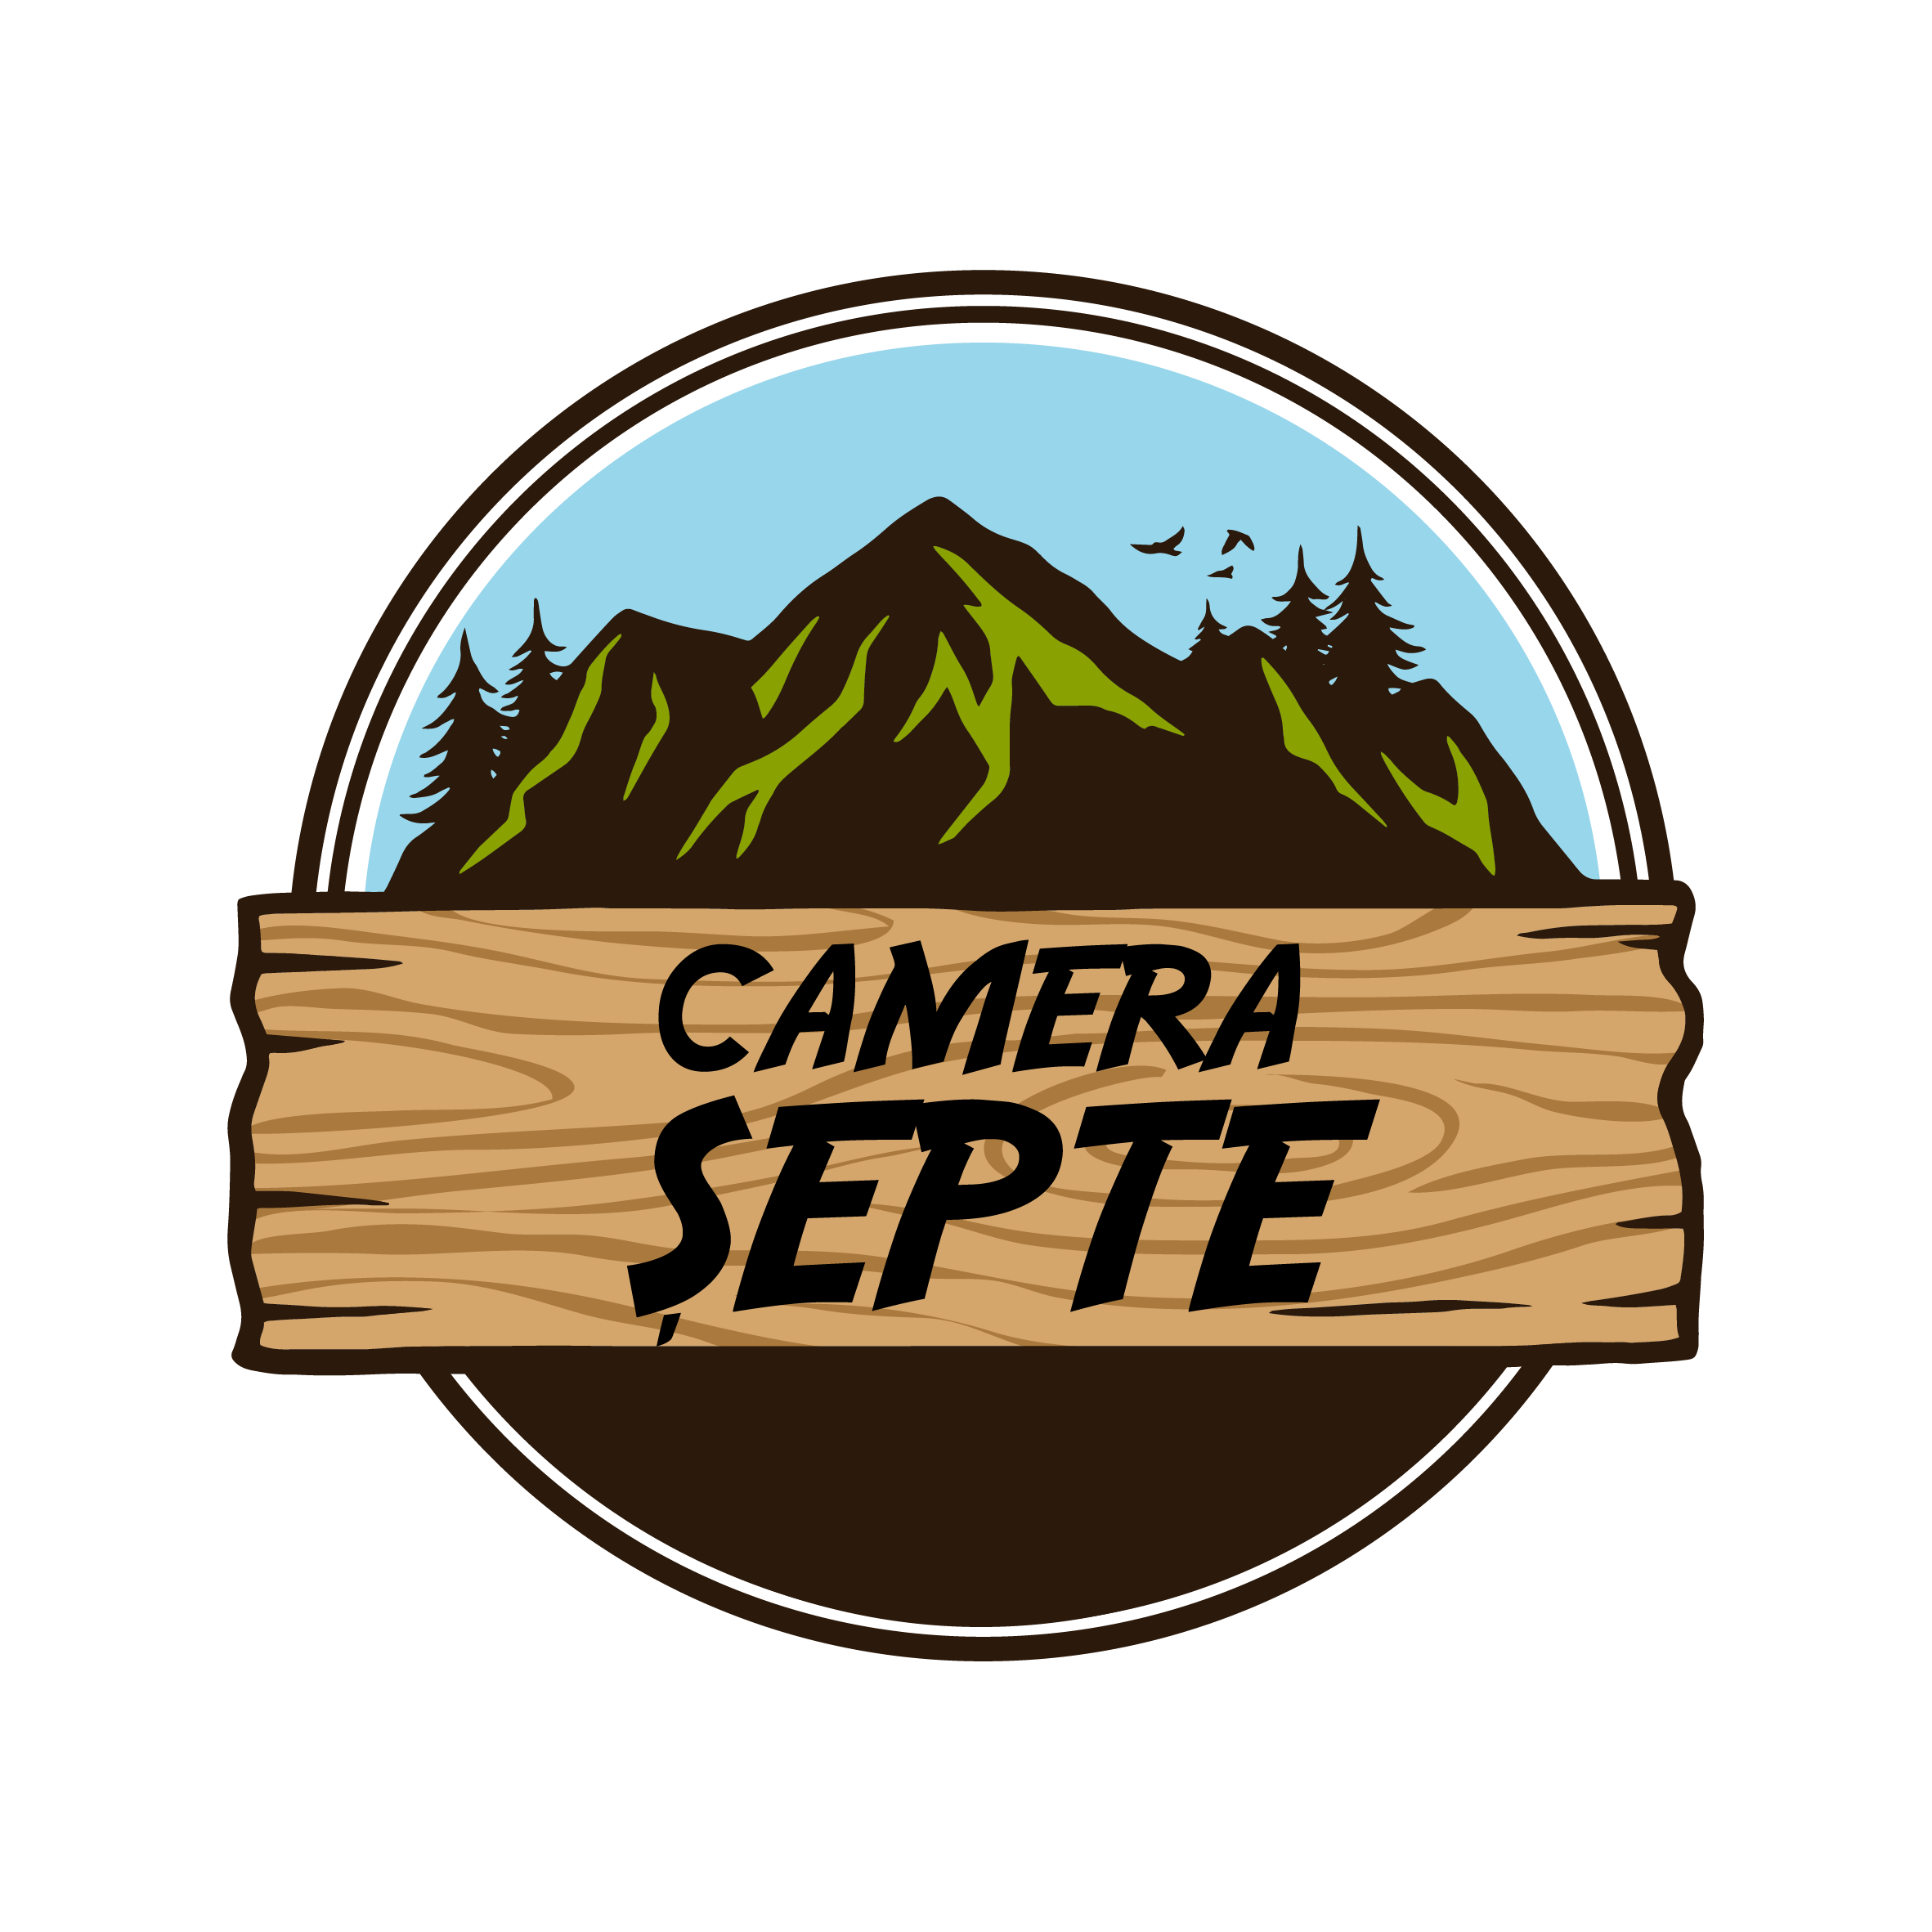 Asociatia Camera Septe logo